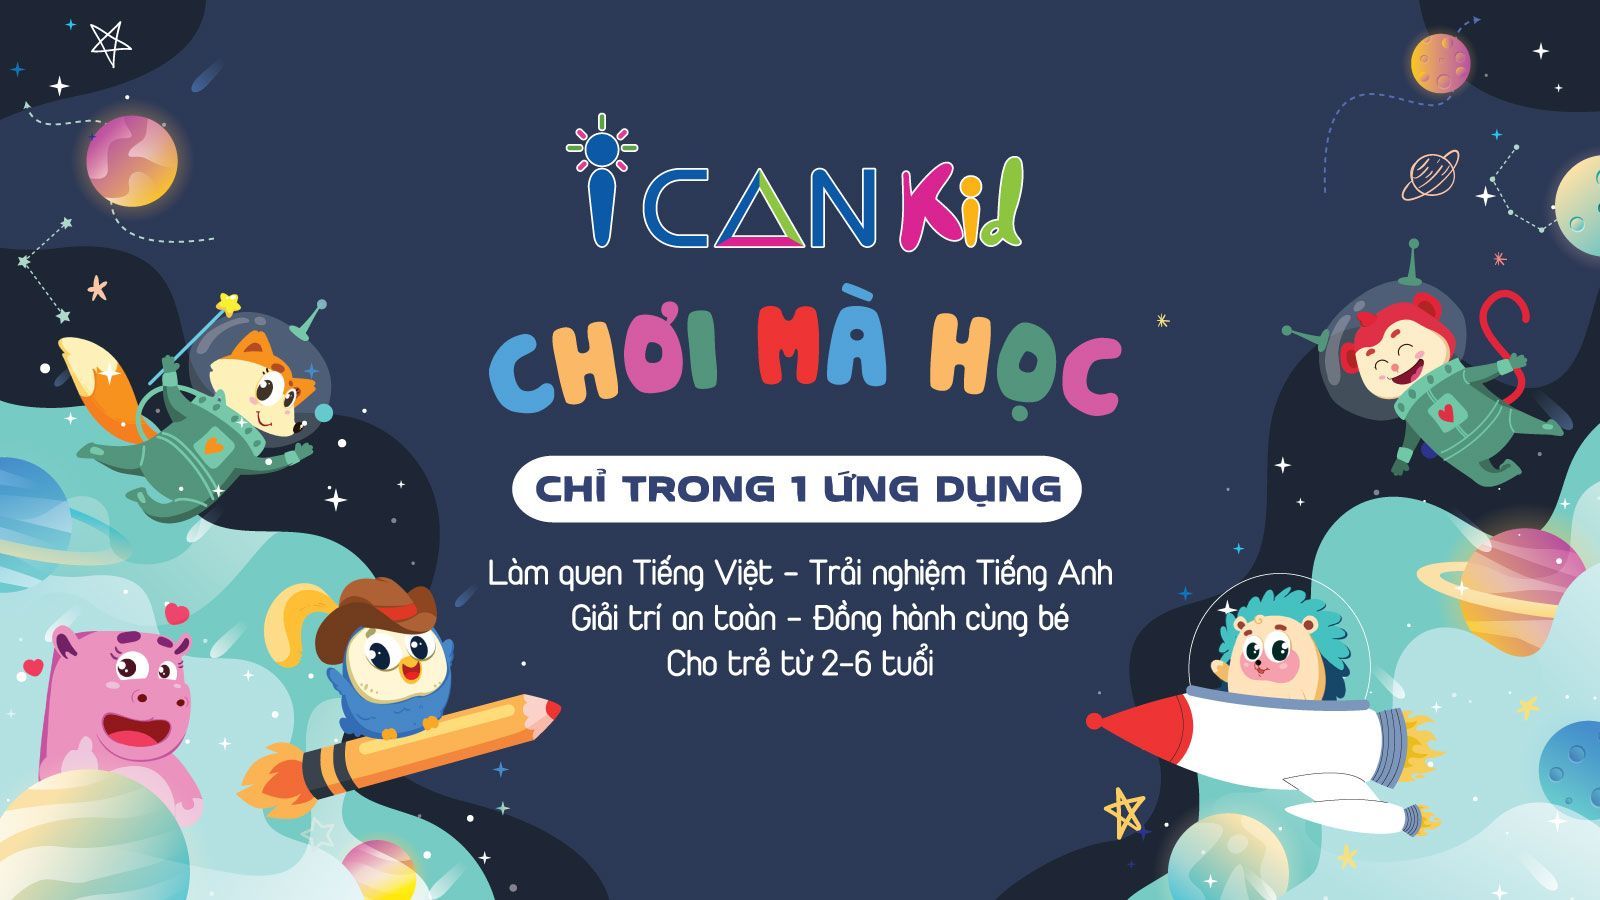 Ứng dụng Việt bắt tay hàng loạt đối tác quốc tế thiết kế nền tảng “Chơi mà học” cho trẻ